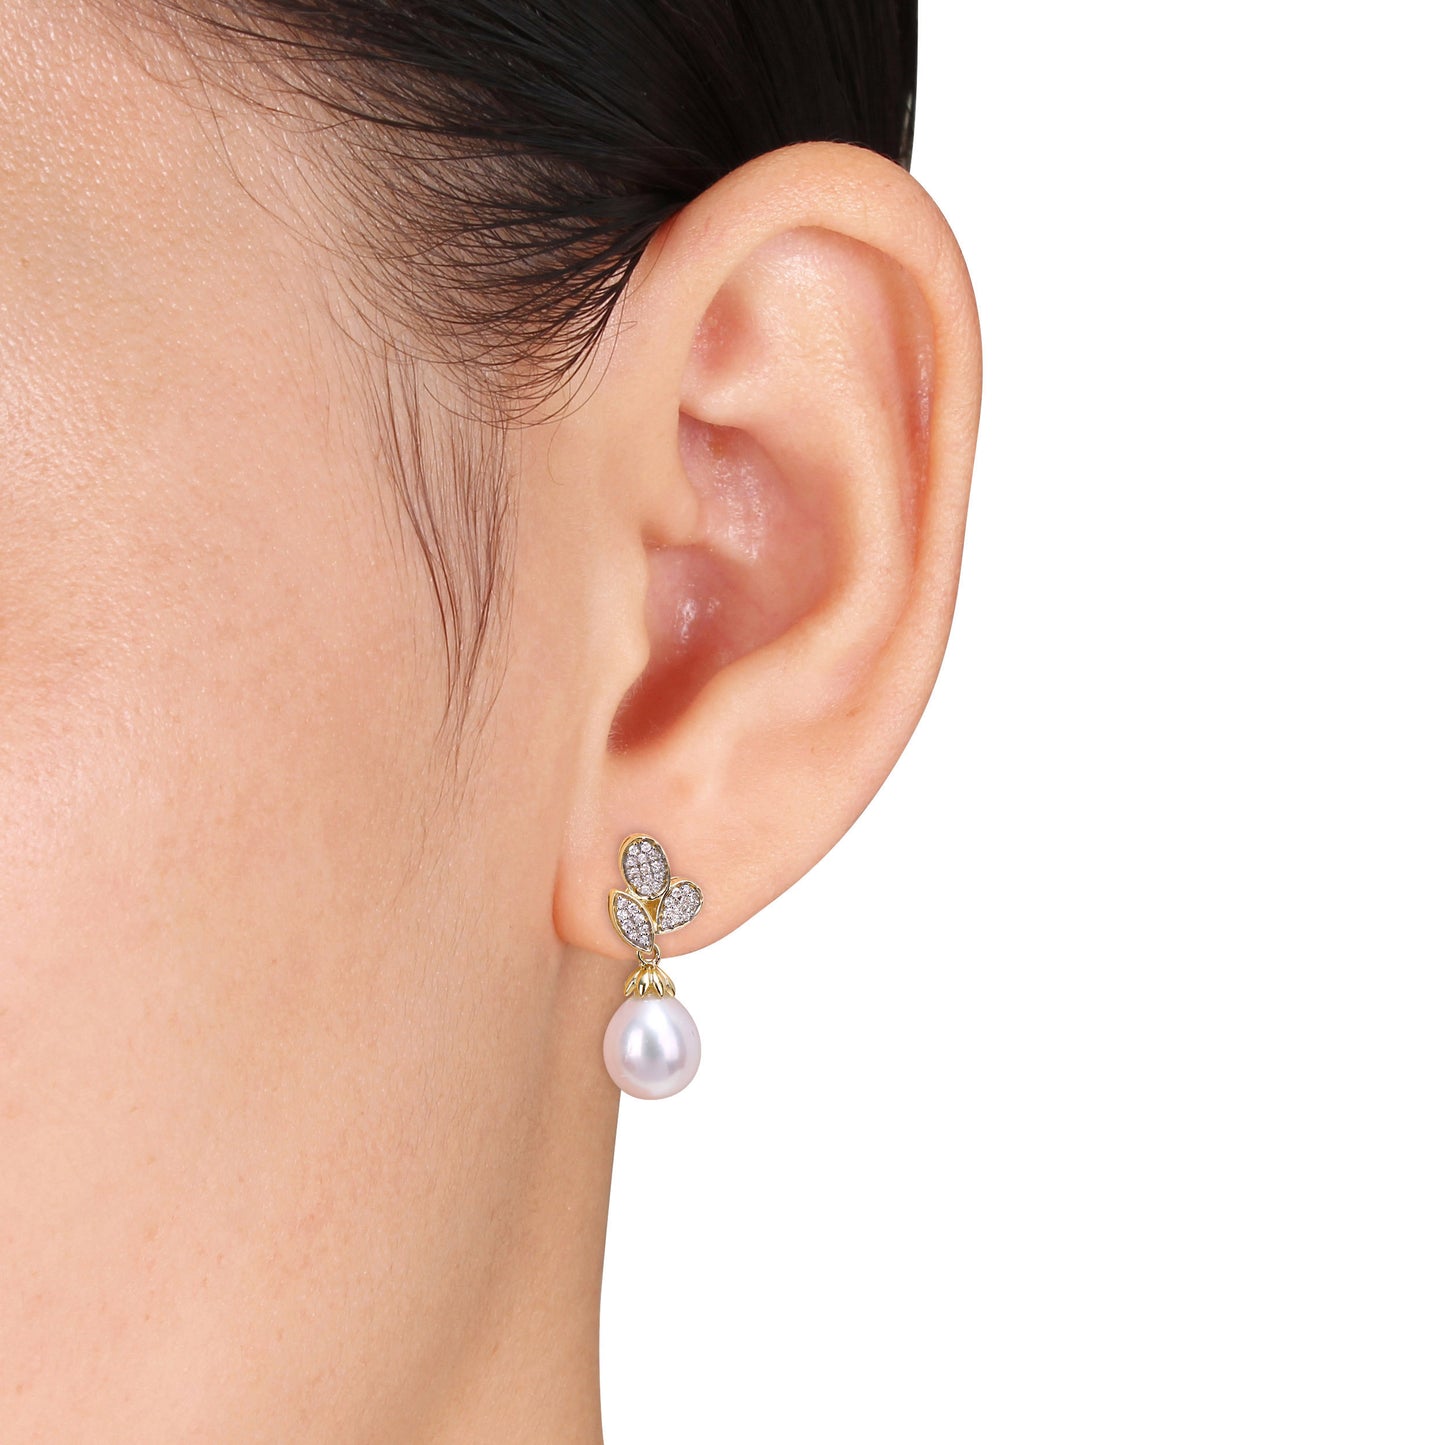 Pearl & Diamond Leaf Drop Earrings in 10k Yellow Gold